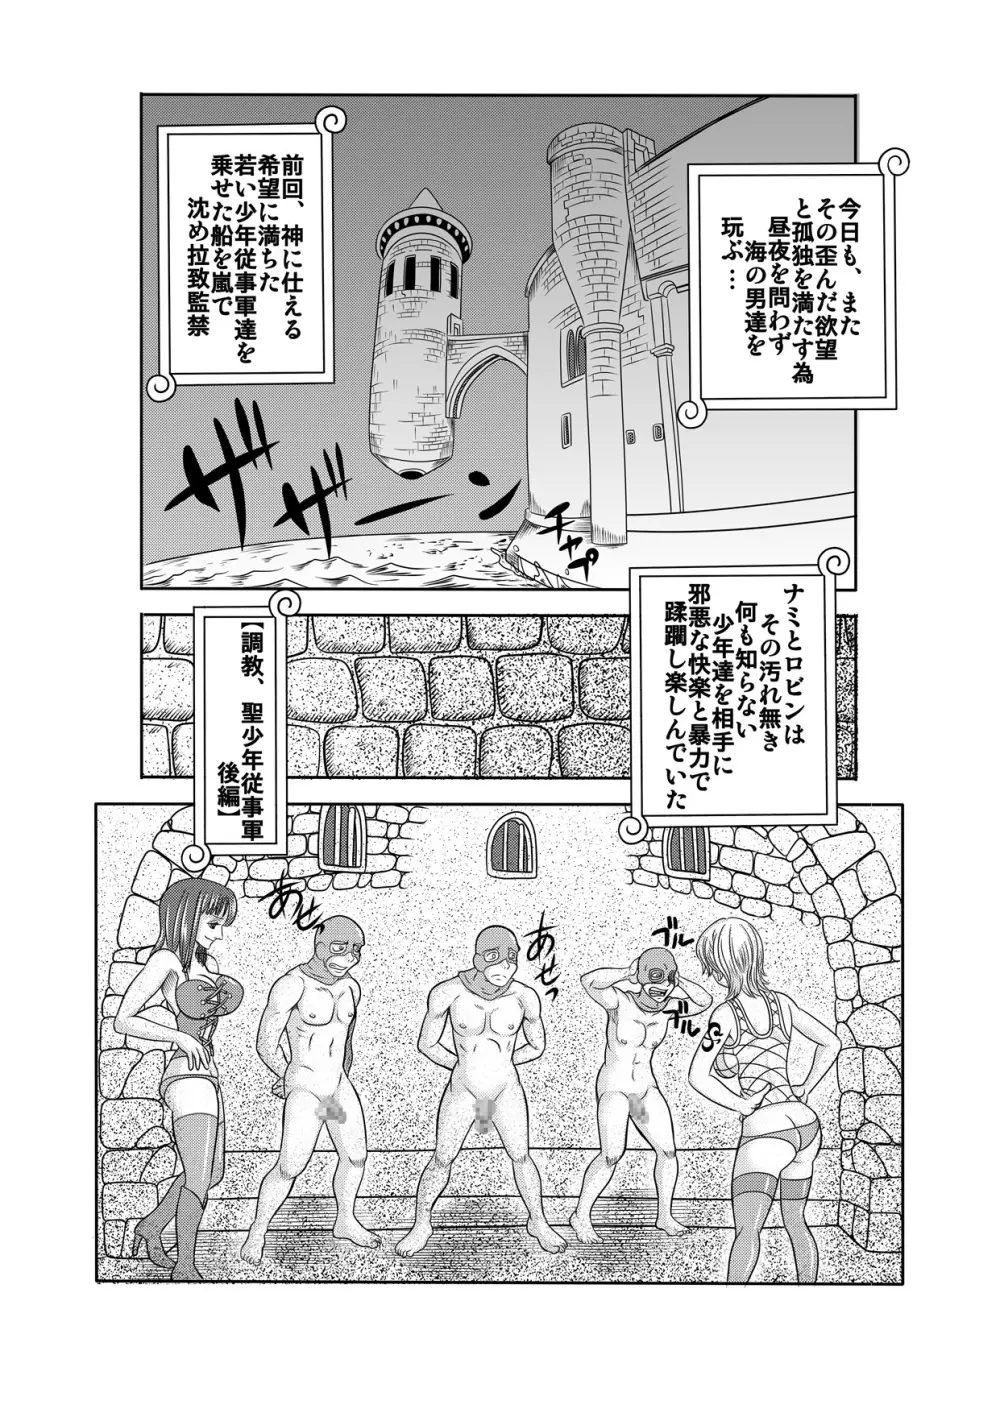 「ヌキヌキの実」の能力者3 聖少年従事軍 中編 - page2